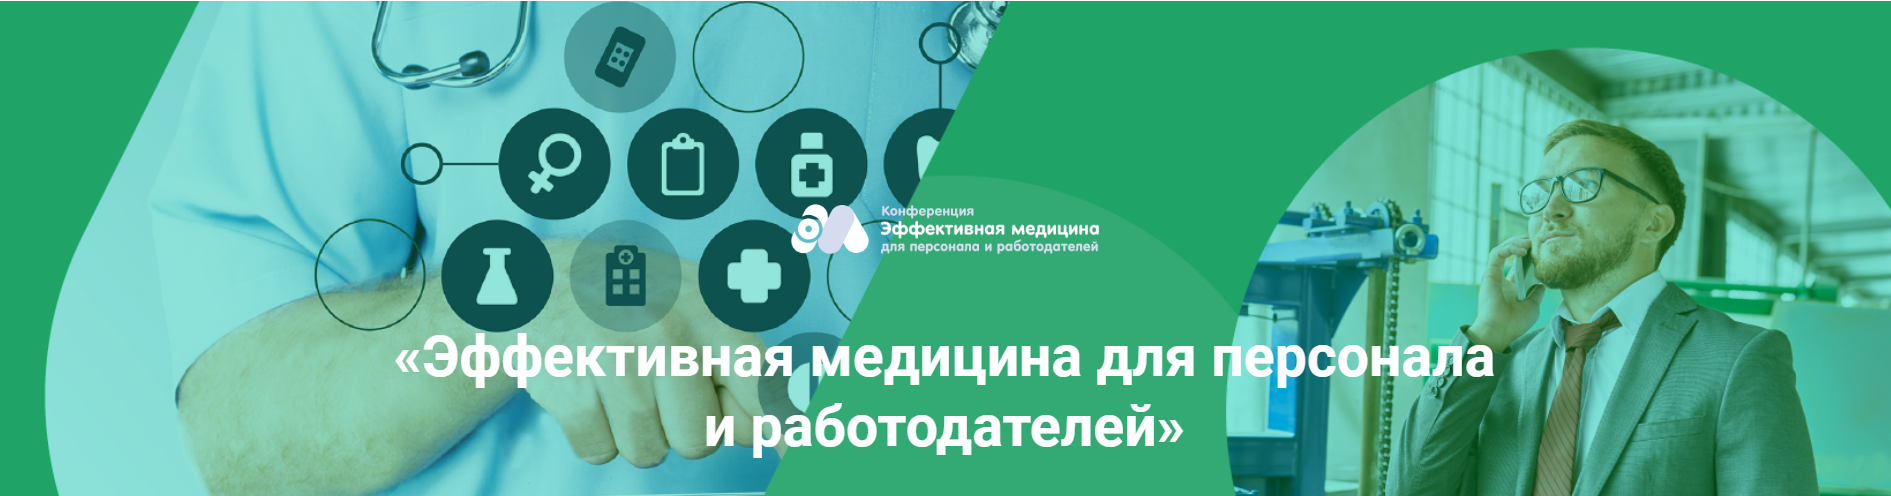 Пост-релиз. Конференция «Эффективная медицина для персонала и работодателей» в Петербурге [1]